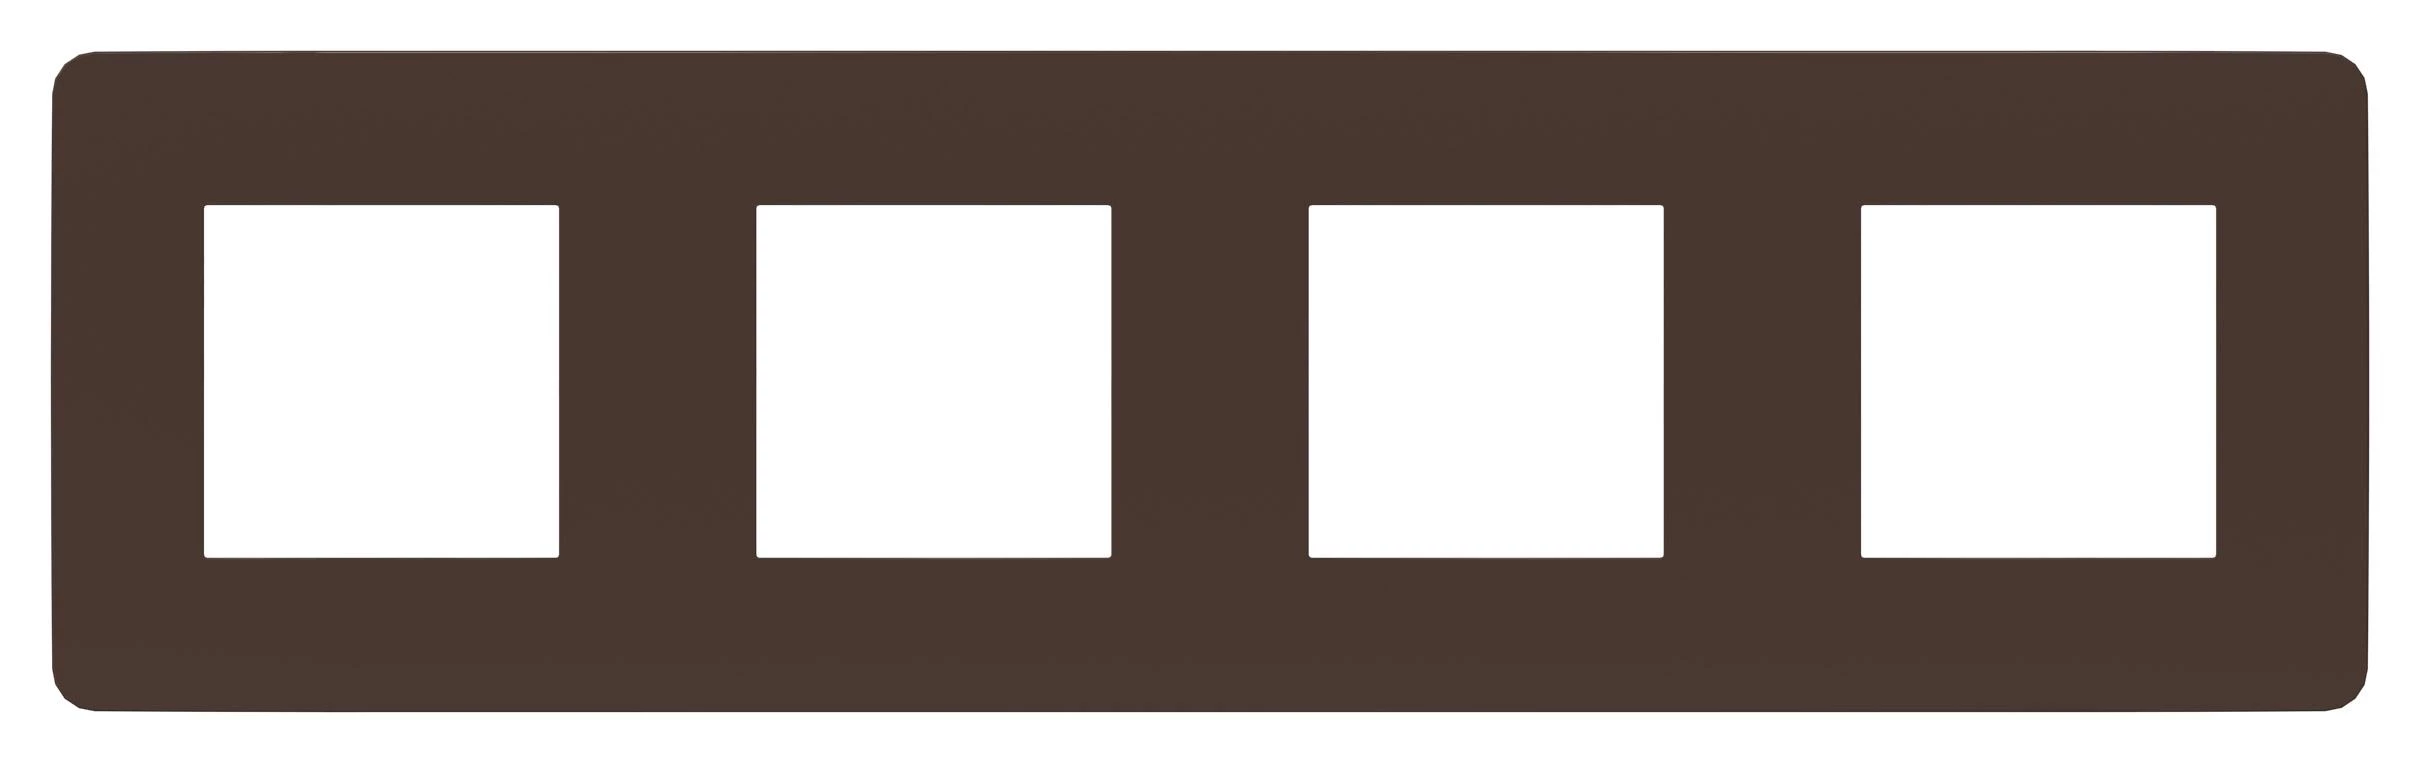  артикул NU280817 название Рамка 4-ая (четверная) , Шоколад/Антрацит, серия Unica Studio, Schneider Electric